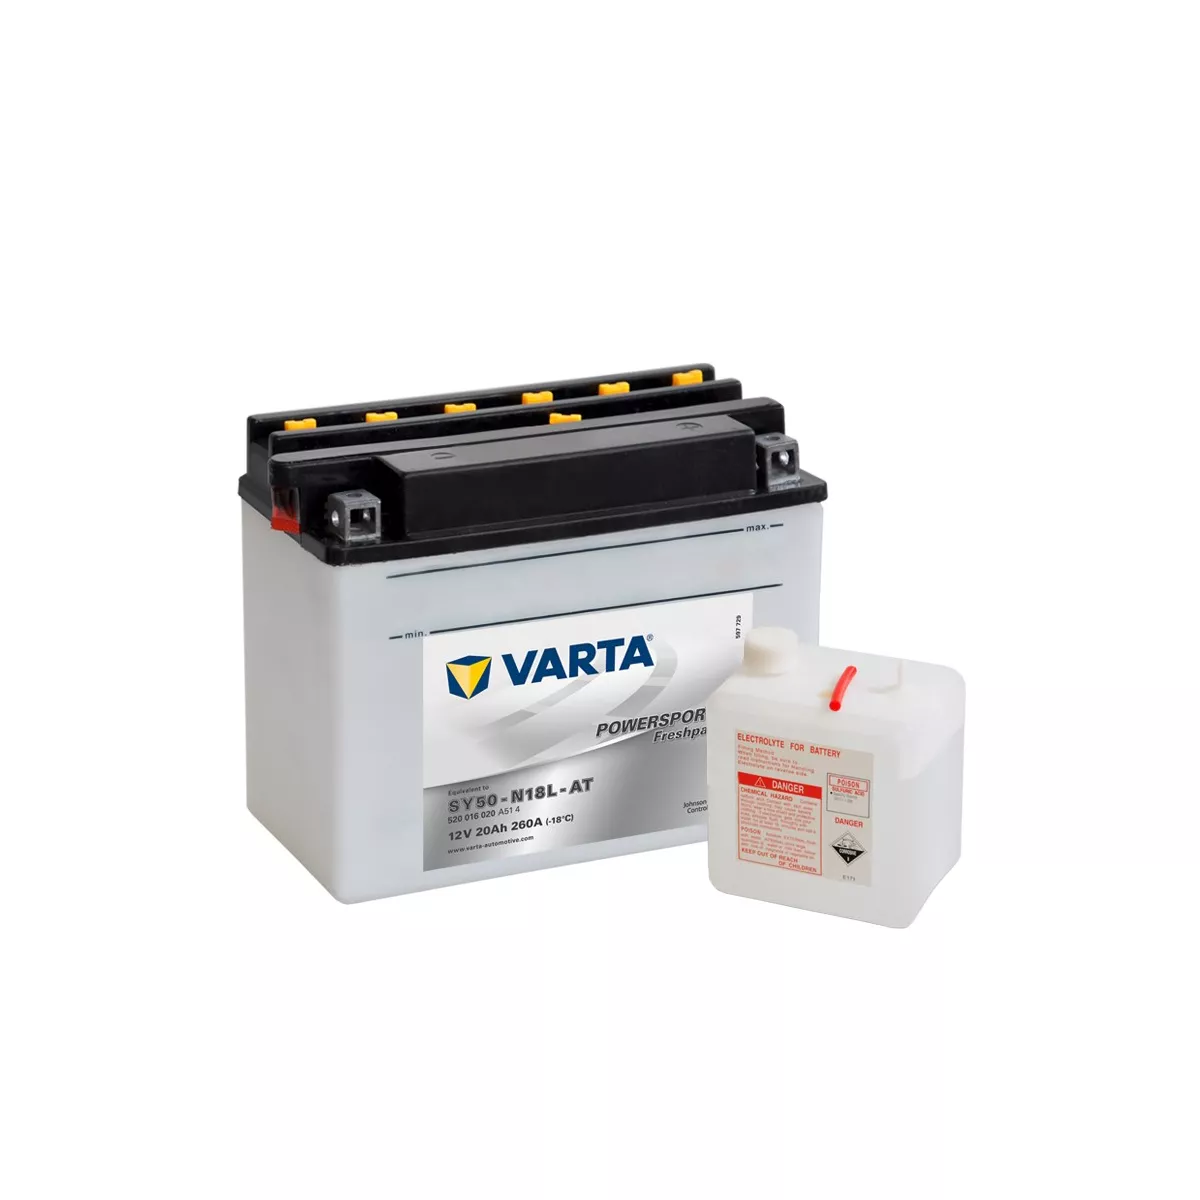 Batterie Moto VARTA SY50-N18L-AT 12V 20AH 260A 